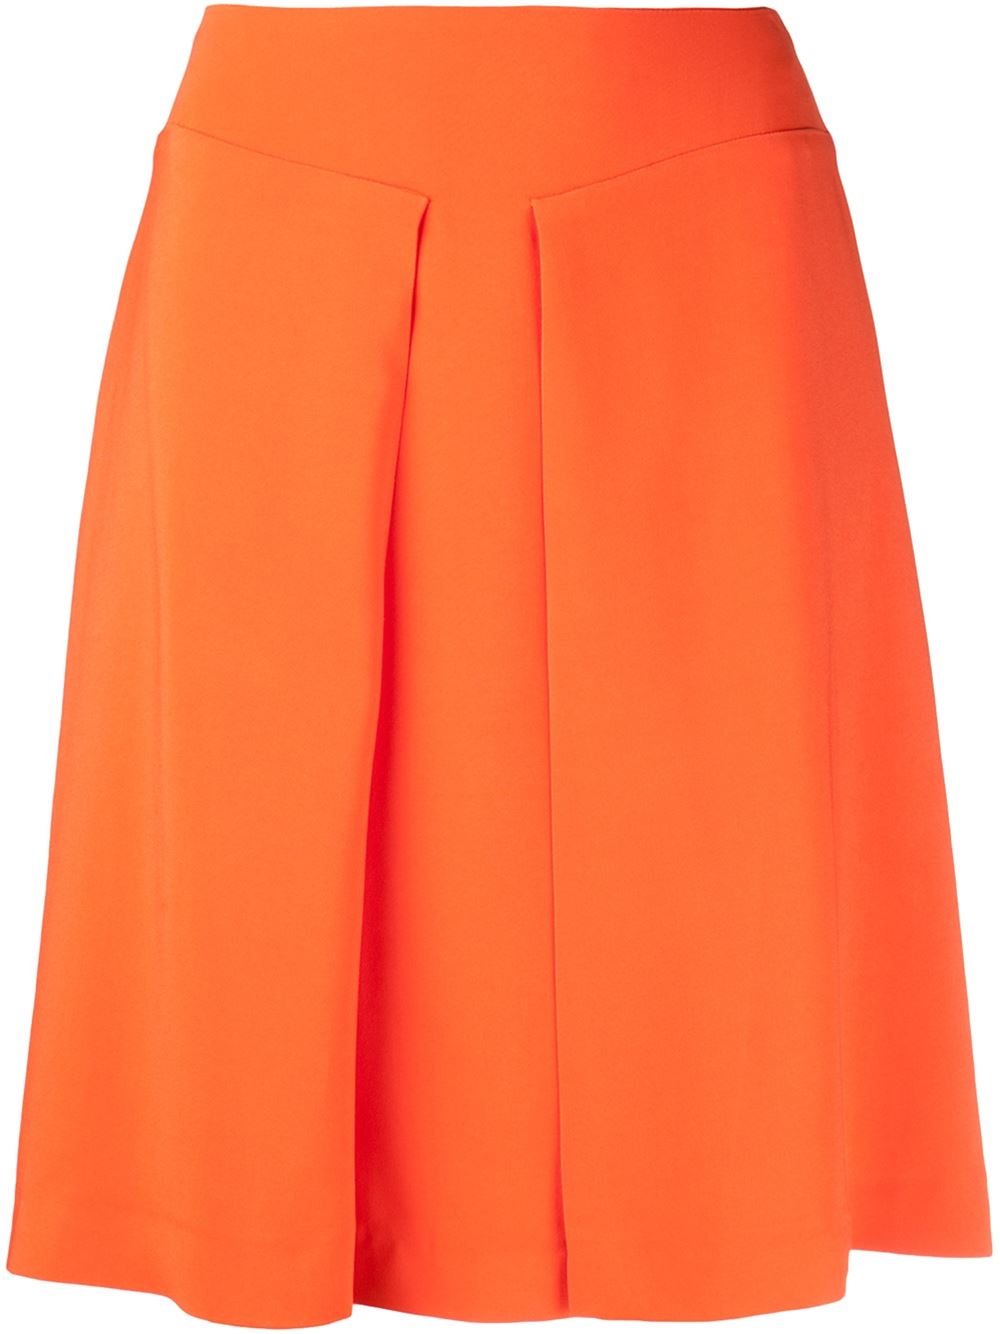 Orange a-line skirt from Rochas